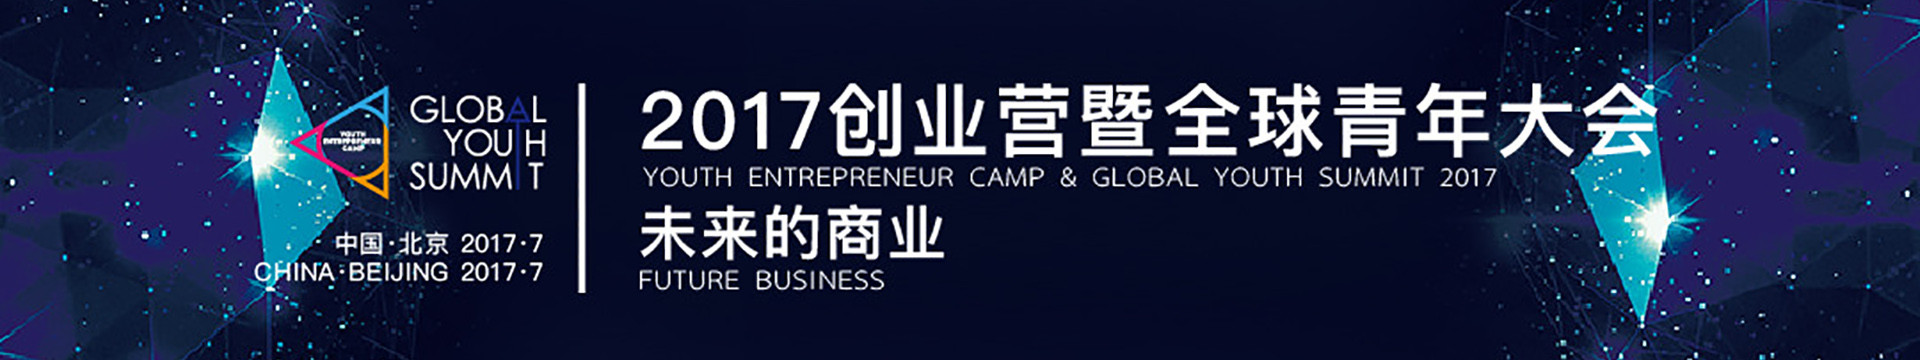 2017立德创业营暨全球青年大会（Youth Entrepreneur Camp & Global Youth Summit 2017）